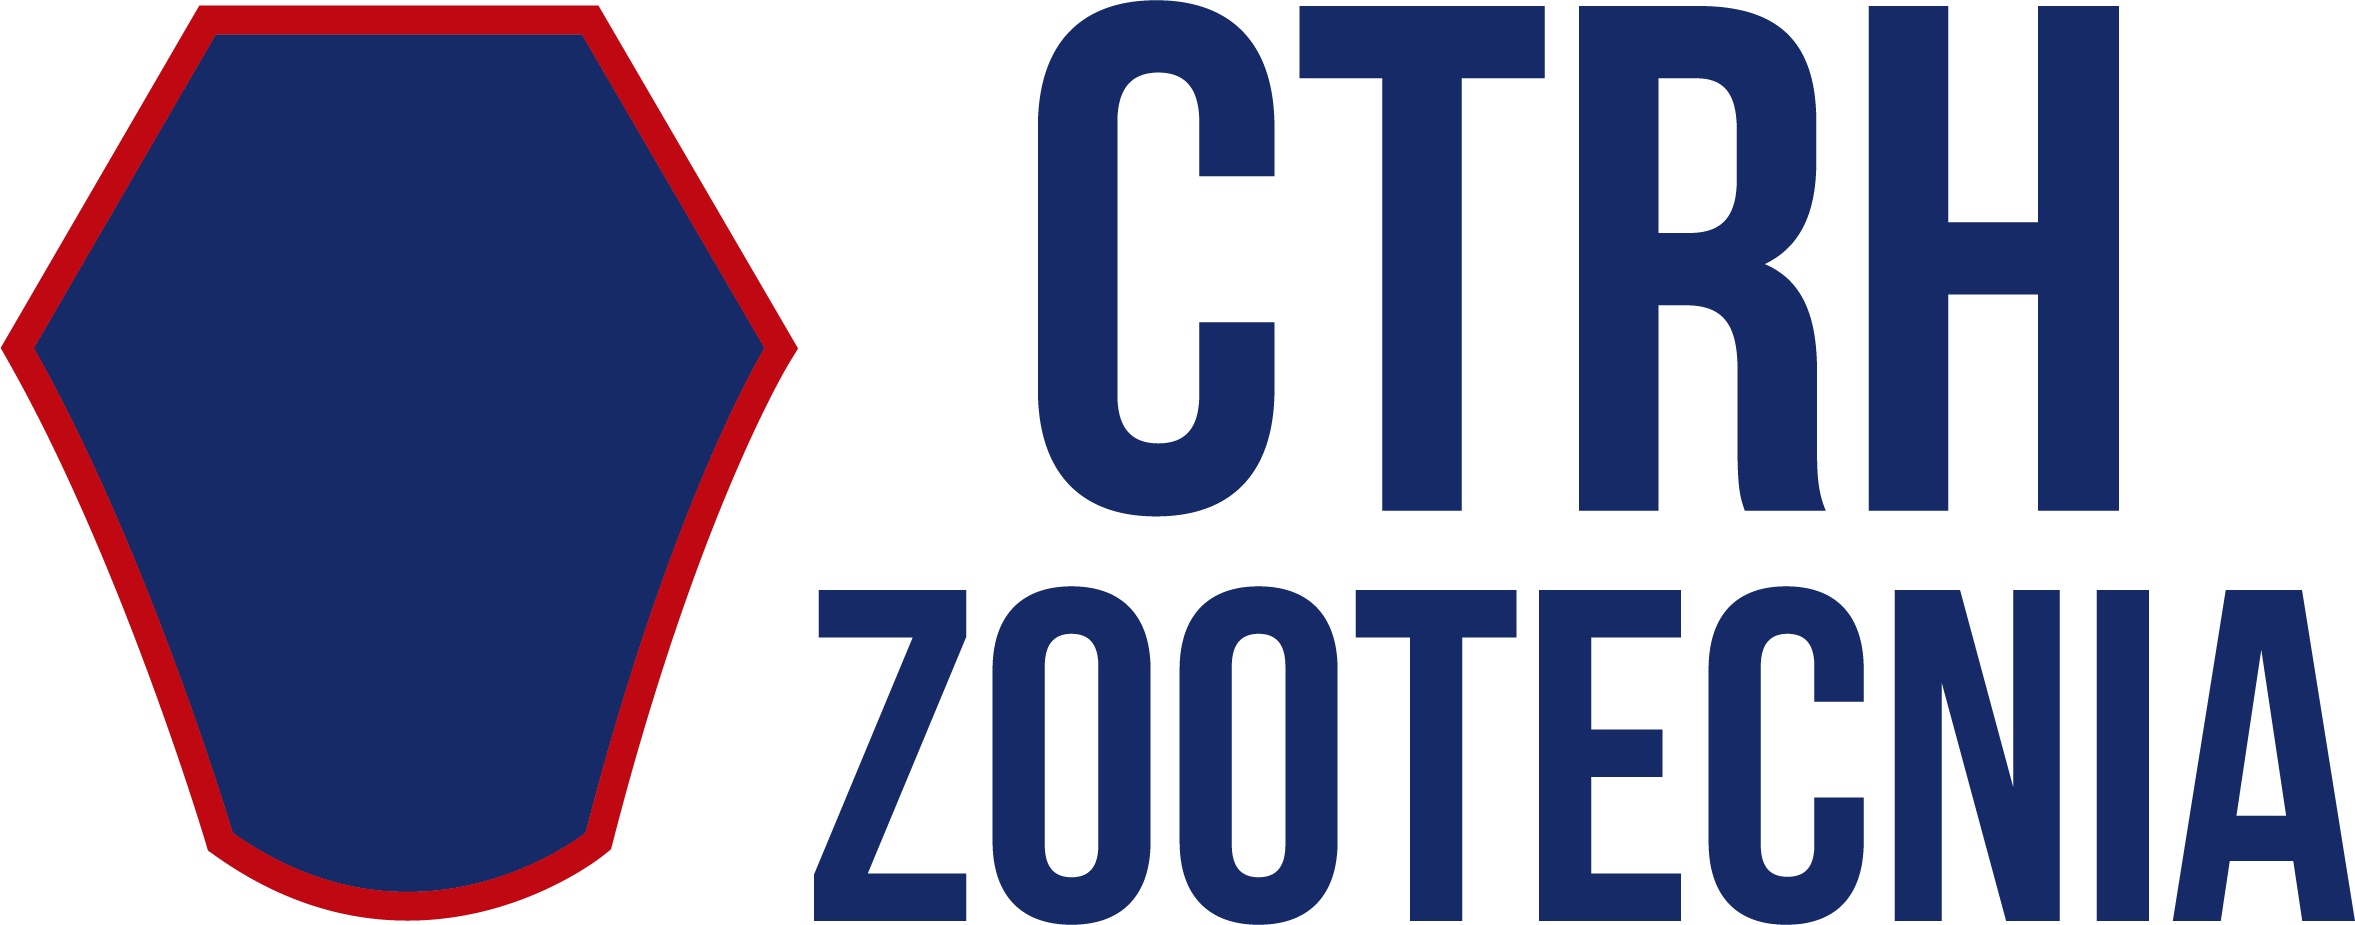 CTRH Zootecnia